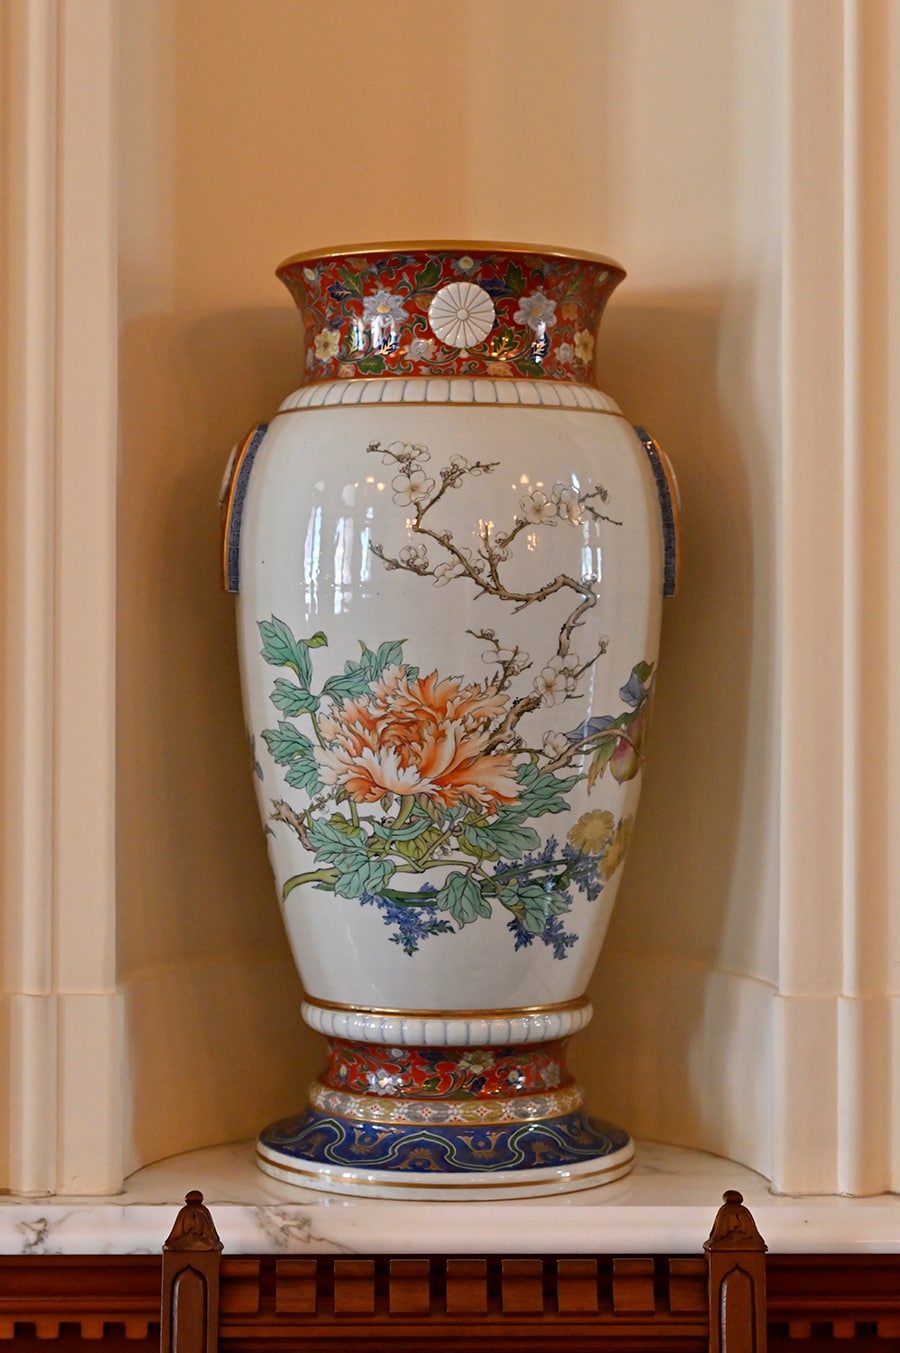 菊花紋が入った伊万里の壺は、カラカウア王の戴冠祝いに明治天皇から贈られたもの。